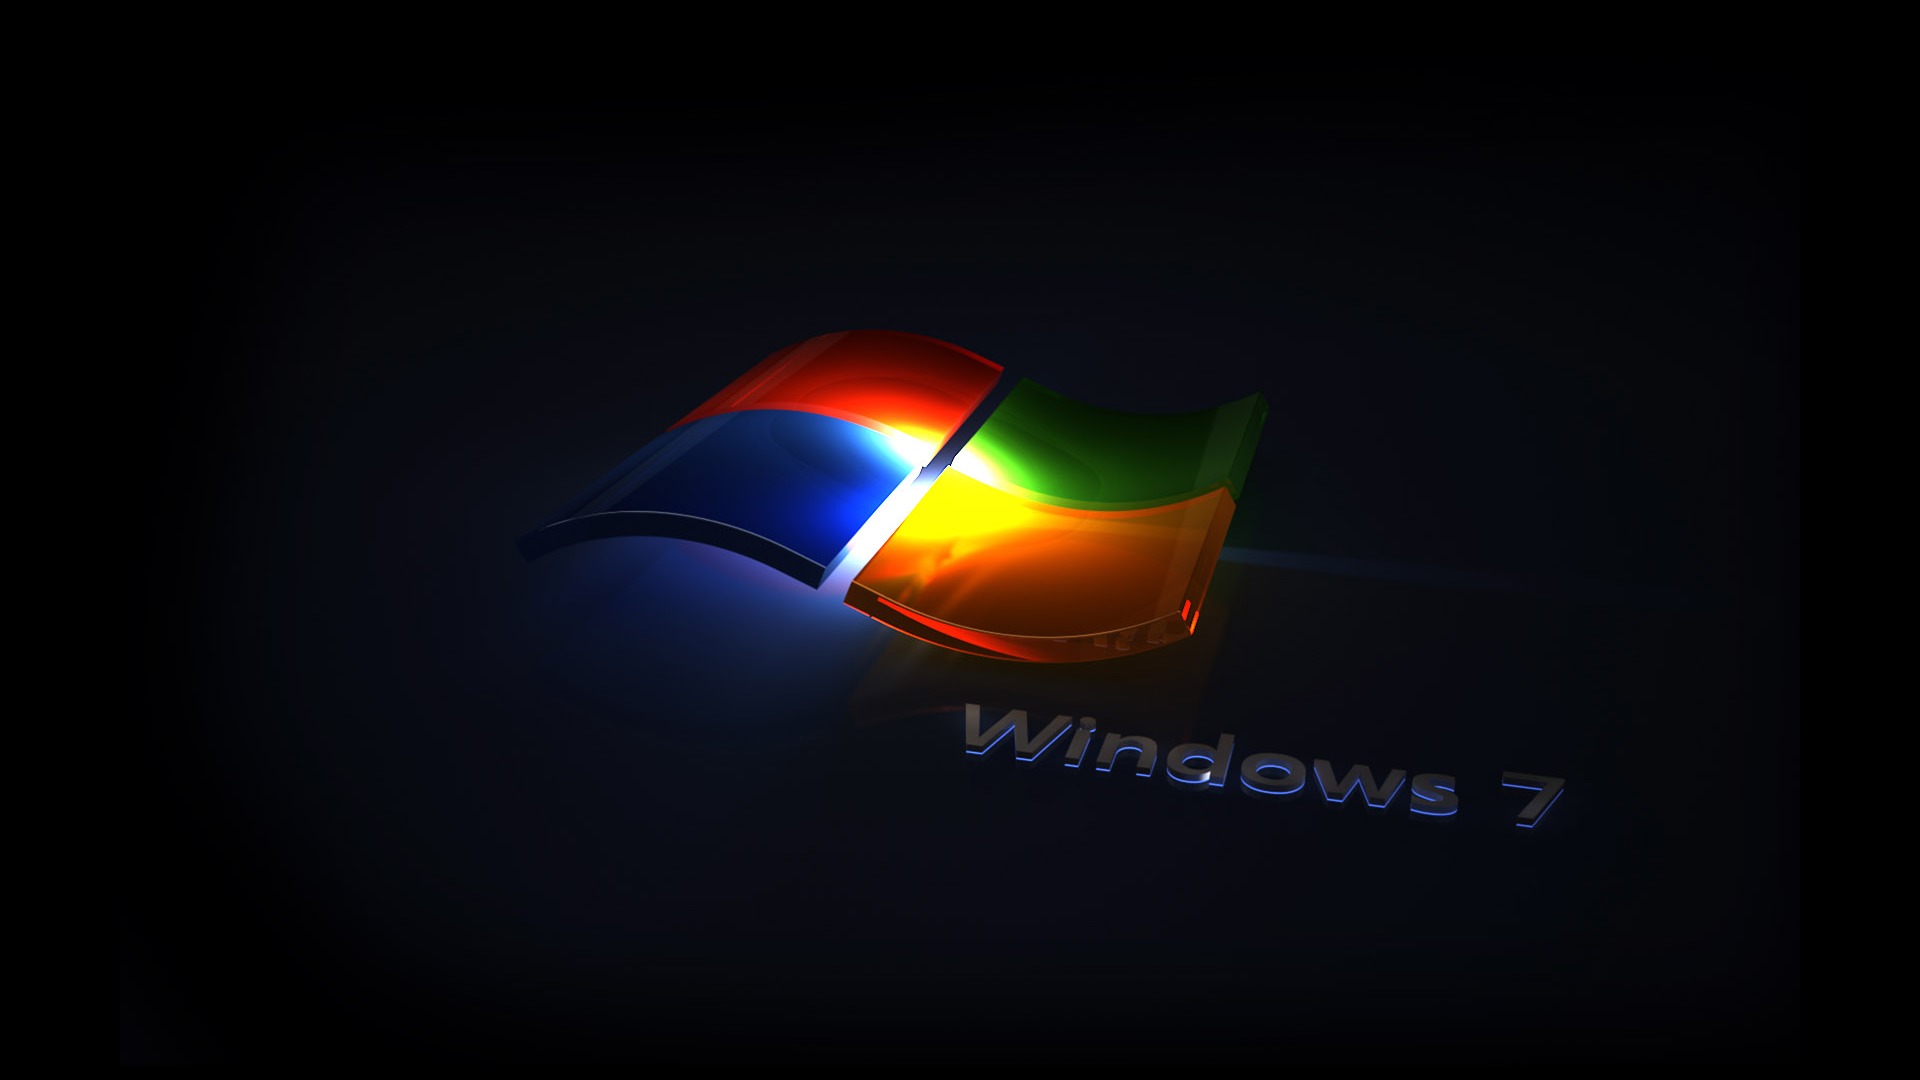 Windows7 tema fondo de pantalla (2) #18 - 1920x1080